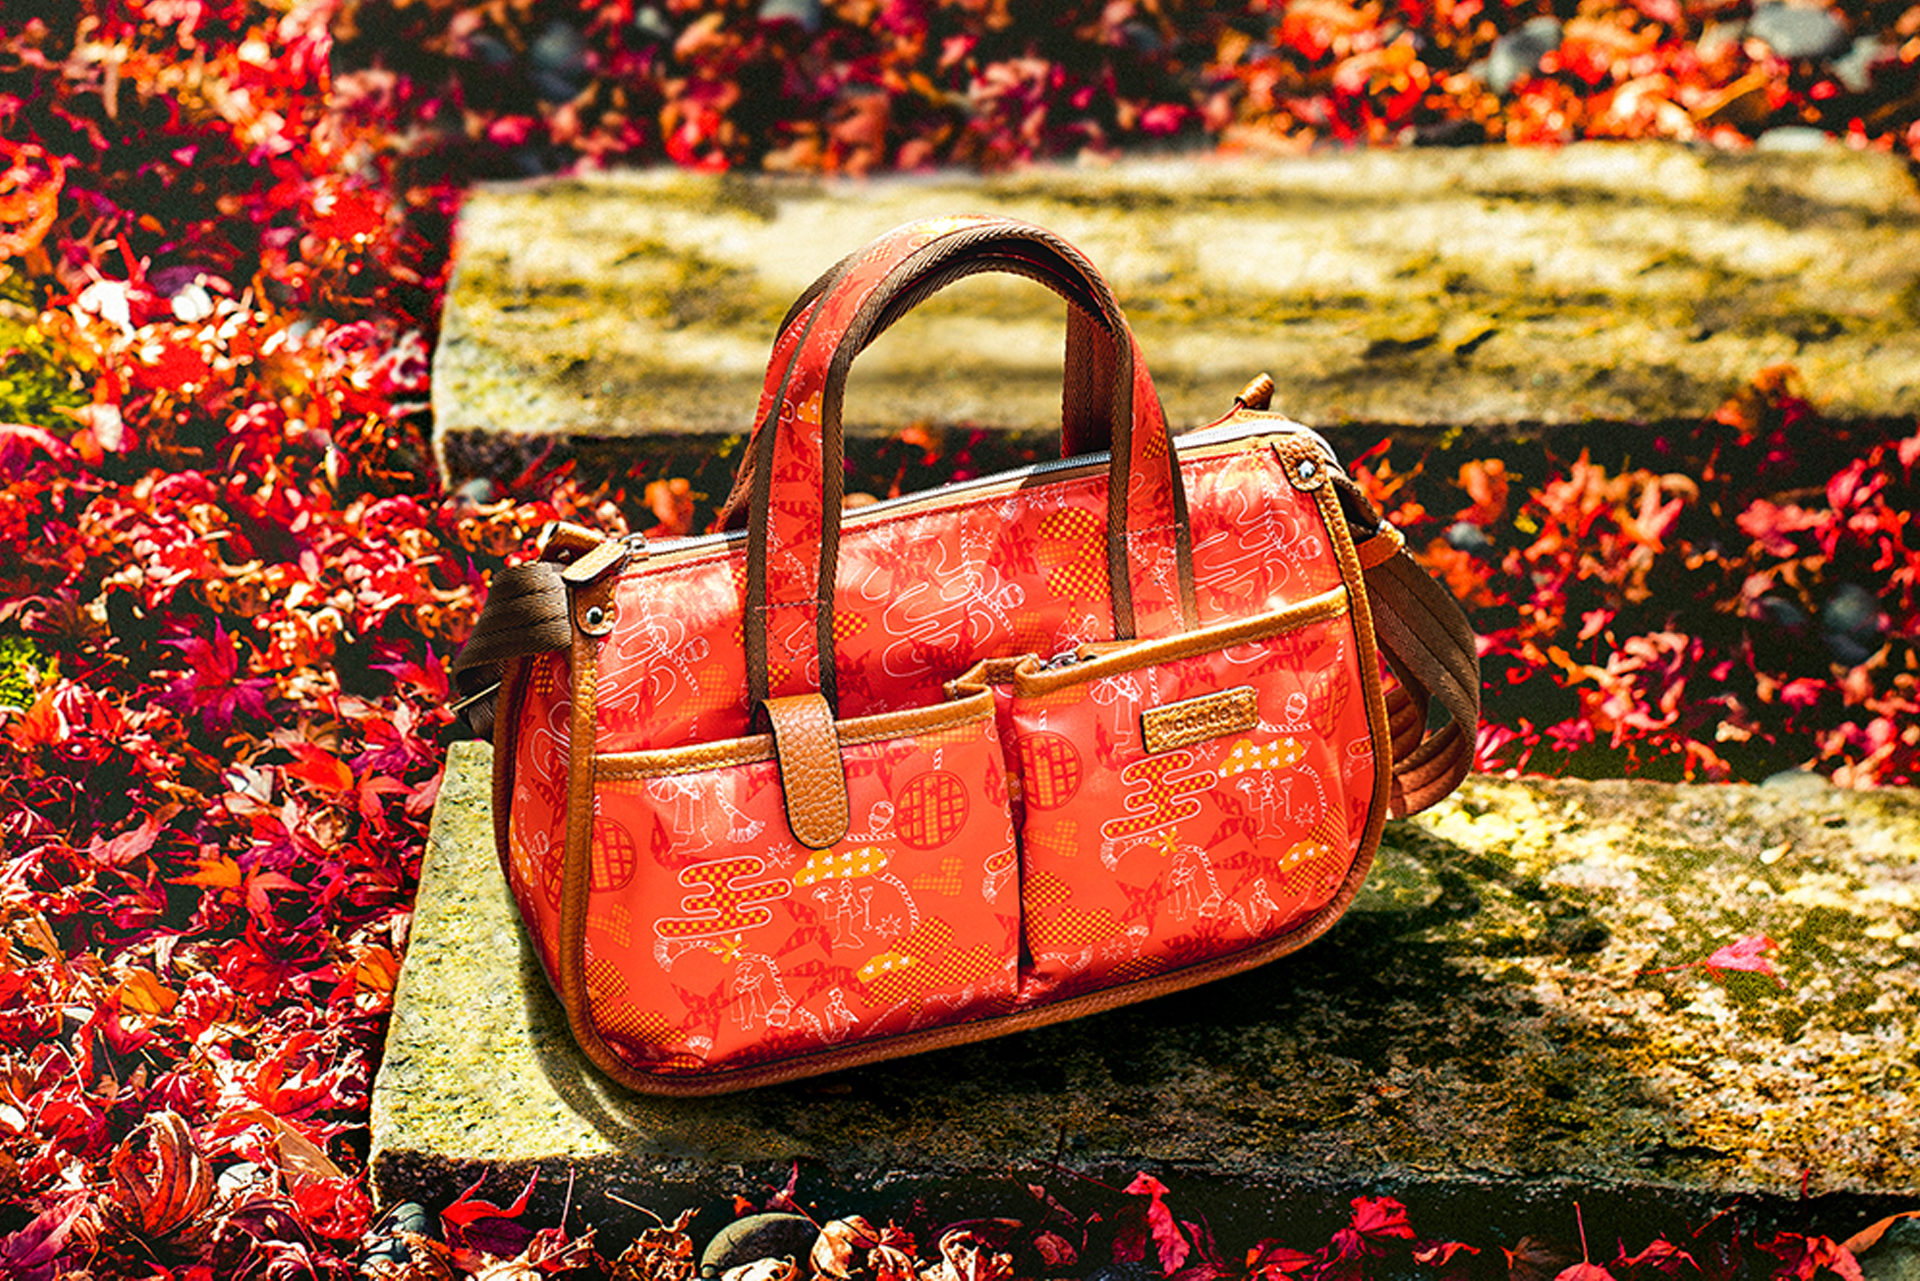 京都で和柄のバッグを探すなら | caedeKyoto[カエデ京都] 紅葉と伝統美 